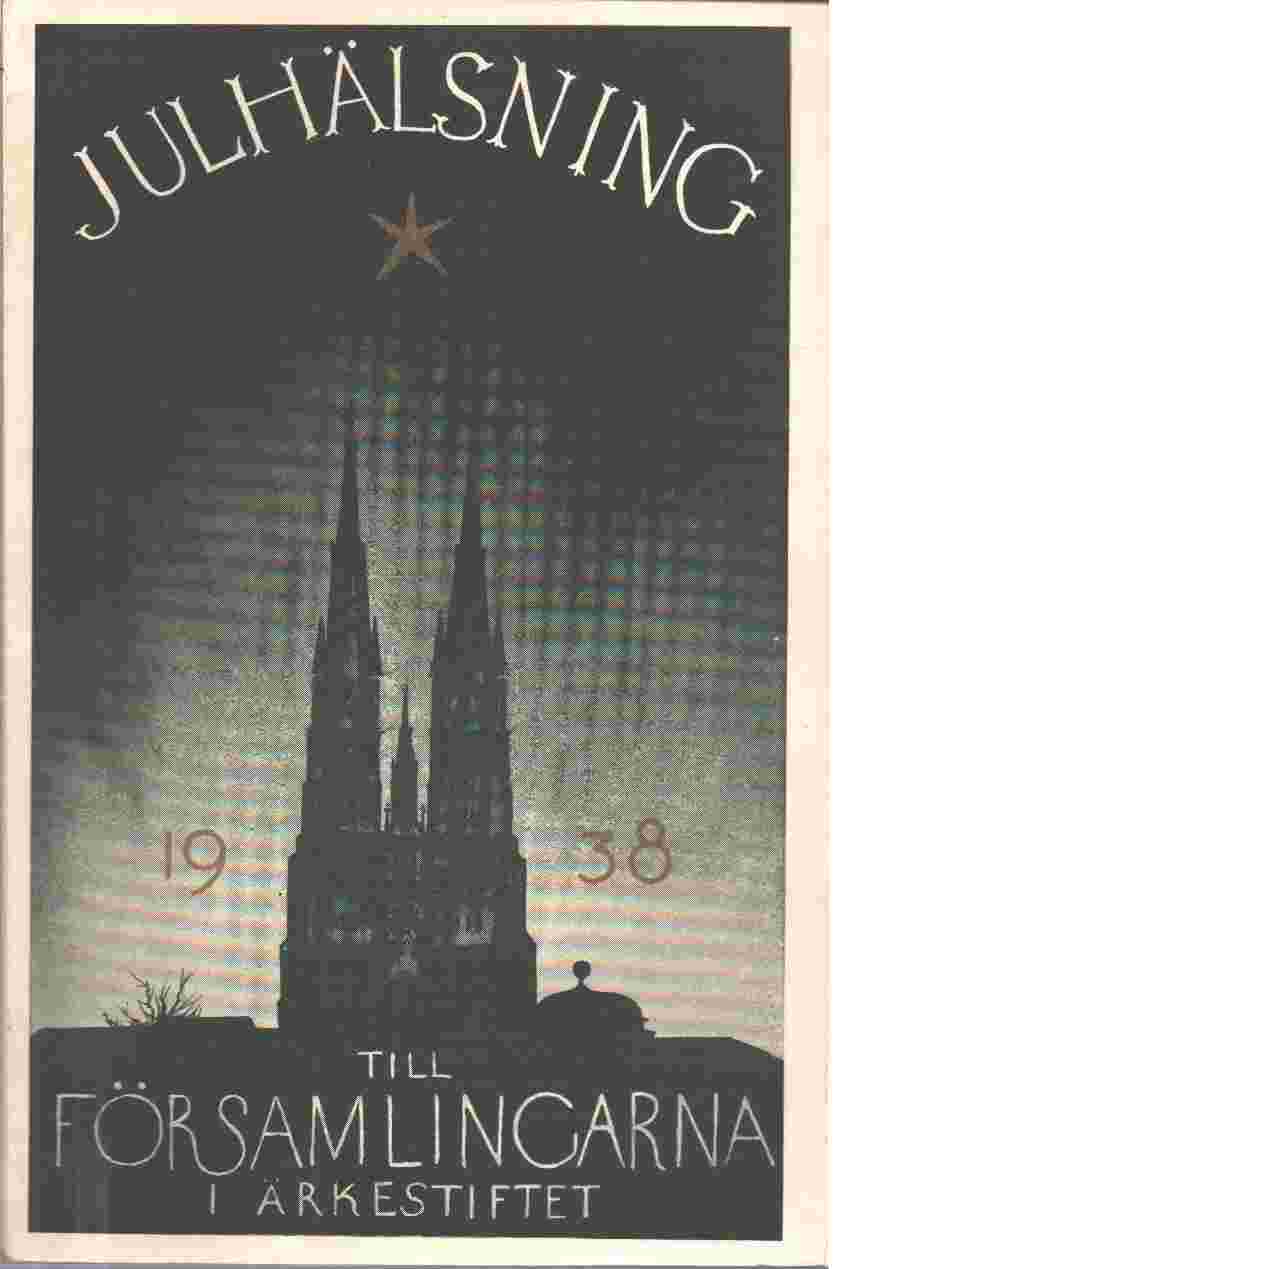 Julhälsning till församlingarna i ärkestiftet  1938 - Svenska kyrkan. Uppsala stift